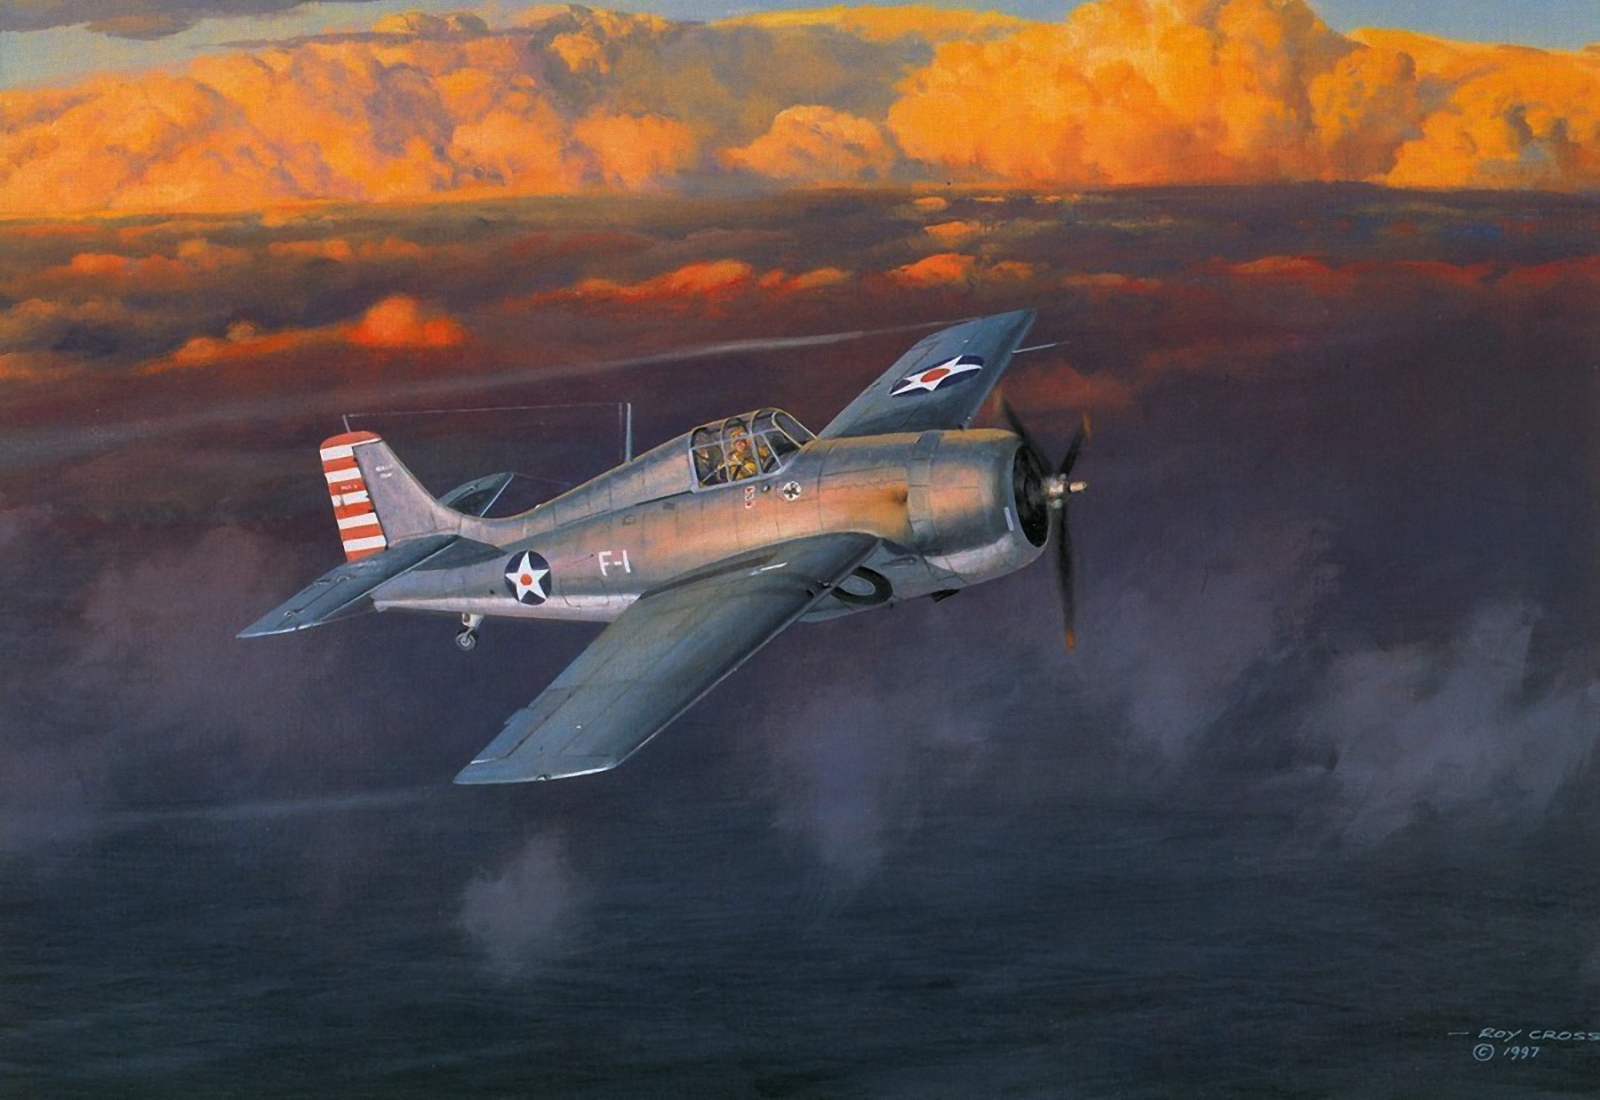 Aviation 2. Самолет f-4f. Авиация 2 мировой войны самолеты второй мировой войны. Grumman f4f Wildcat арт. F4f Wildcat арт.